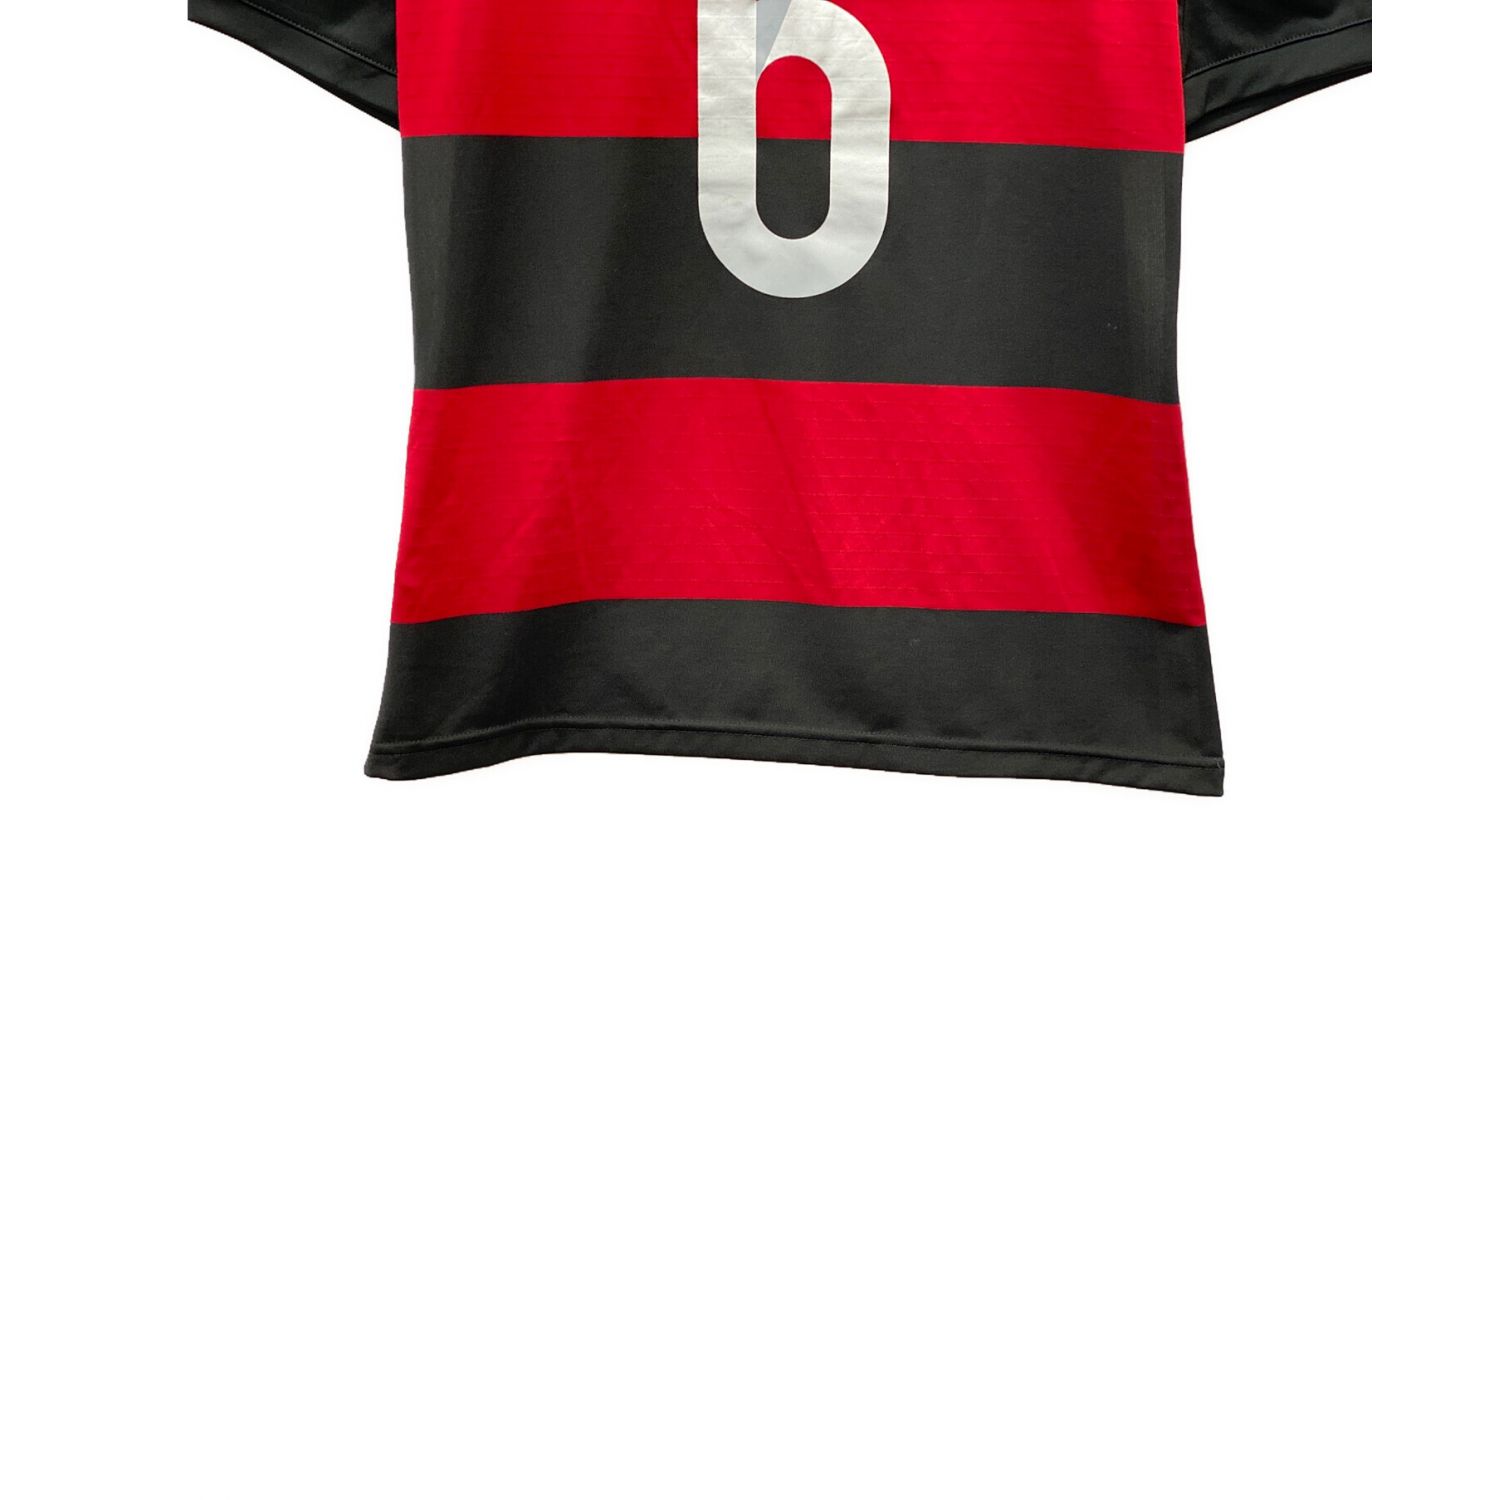 ドイツ代表 サッカーユニフォーム SIZE L ブラック×レッド 2014年W杯